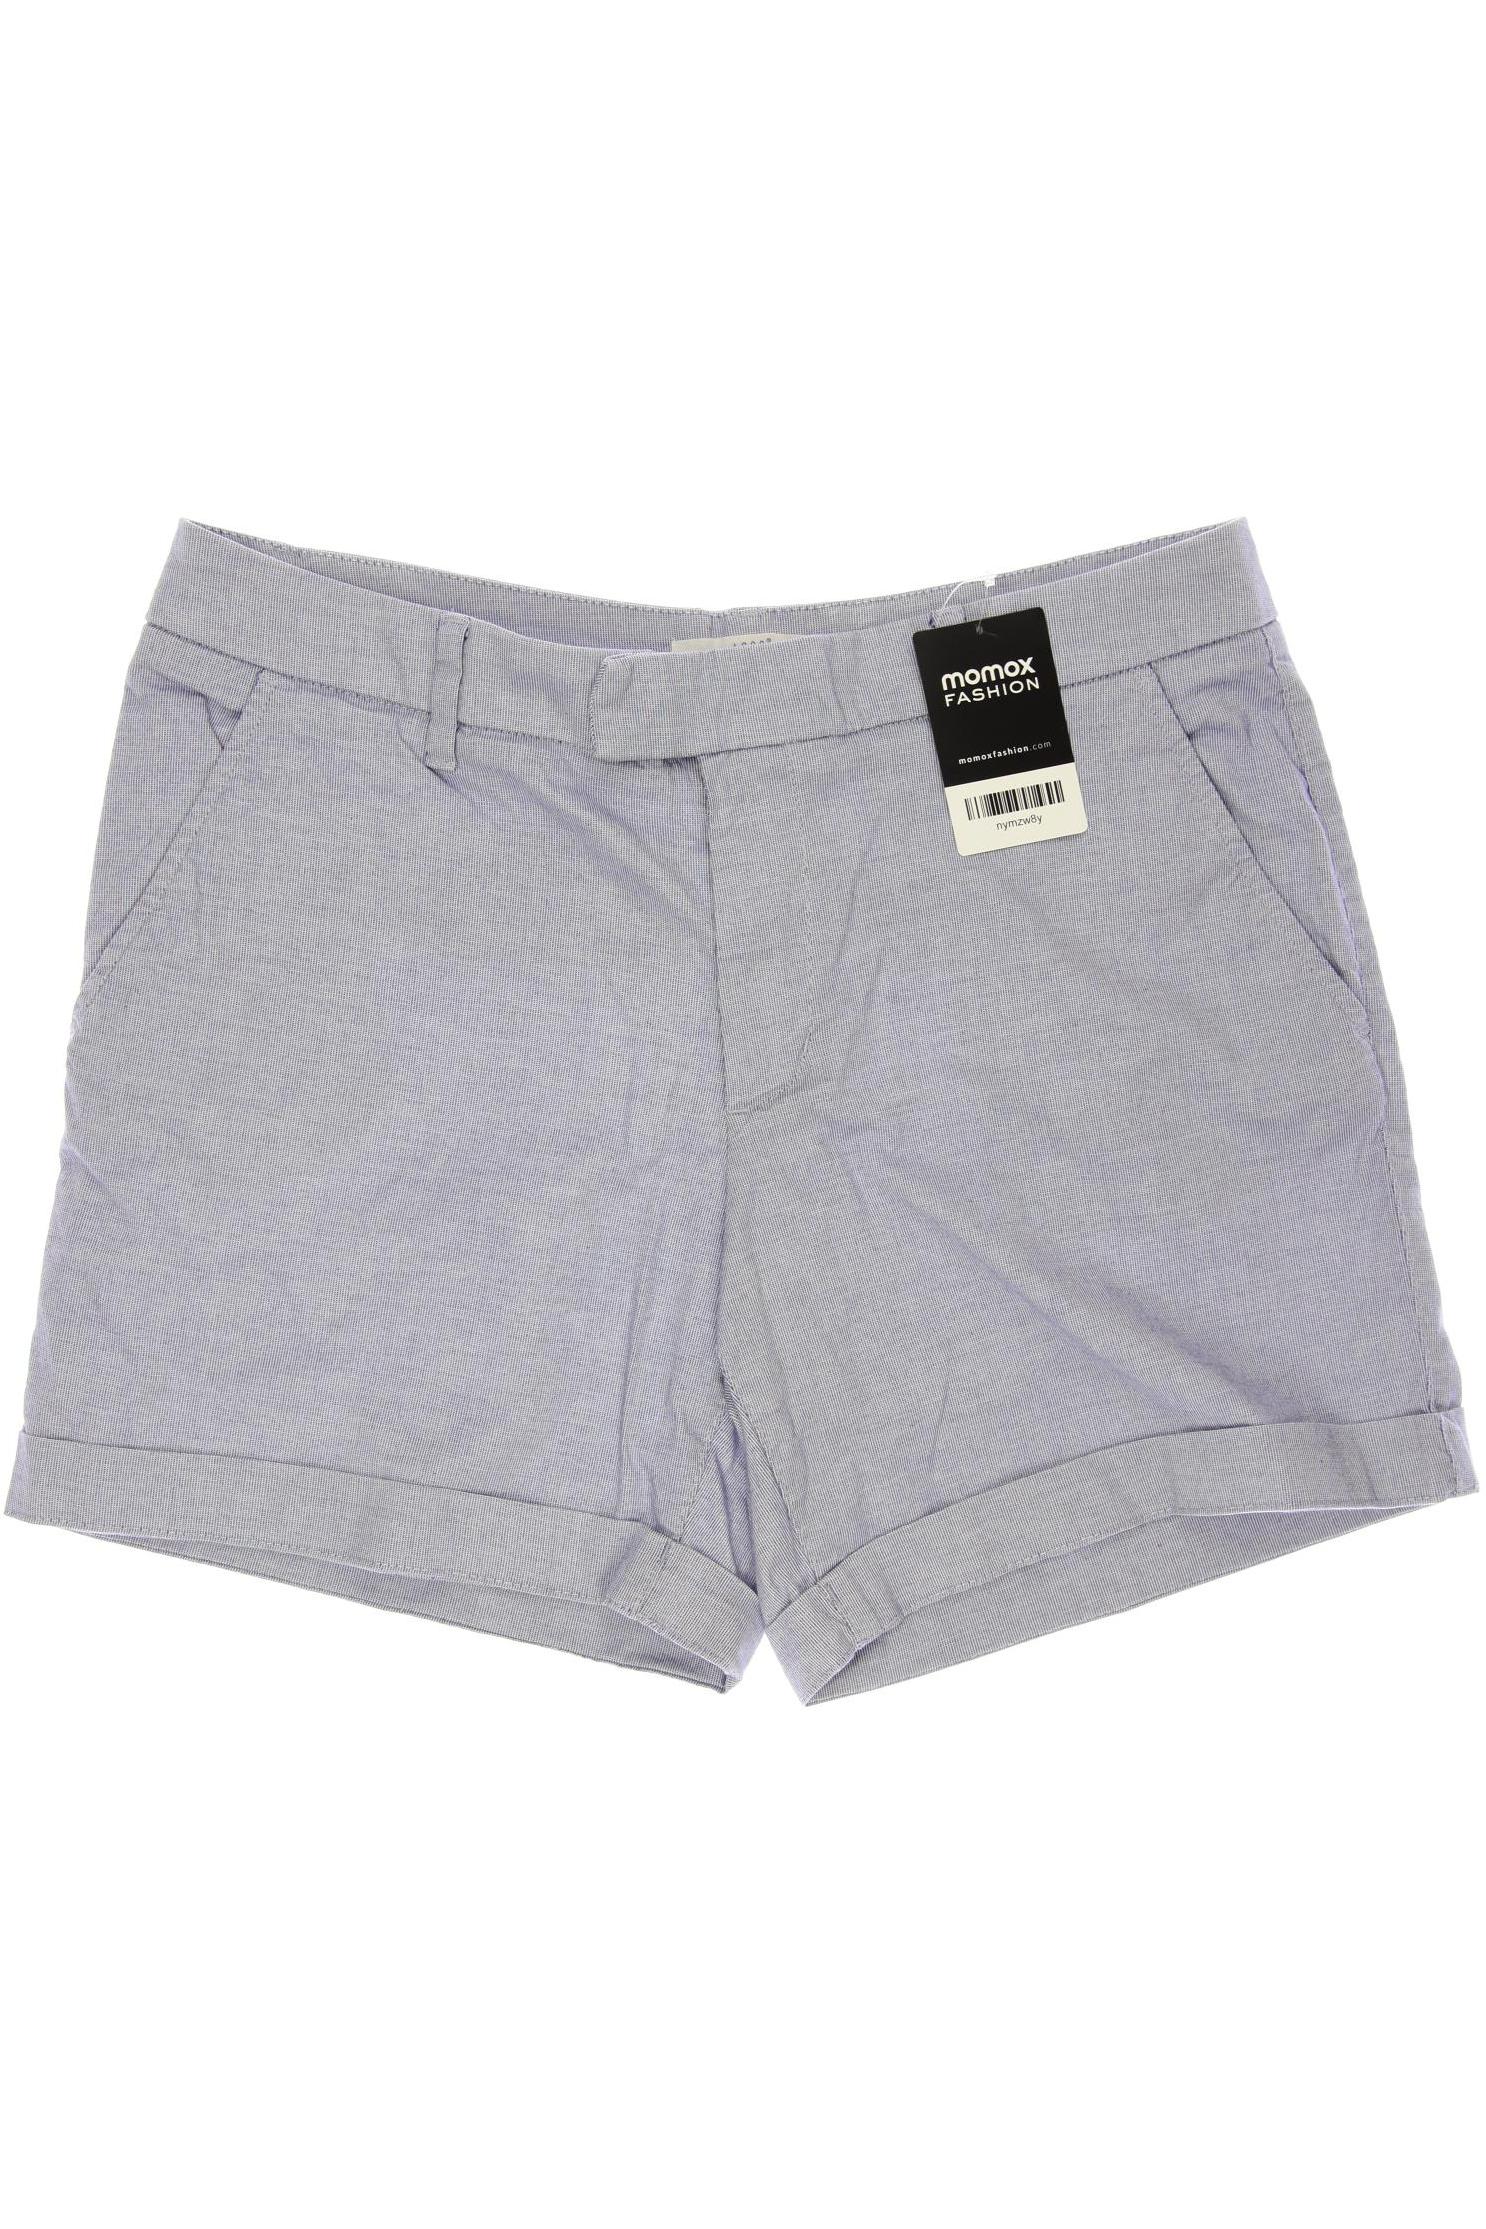 H&M Damen Shorts, hellblau, Gr. 40 von H&M